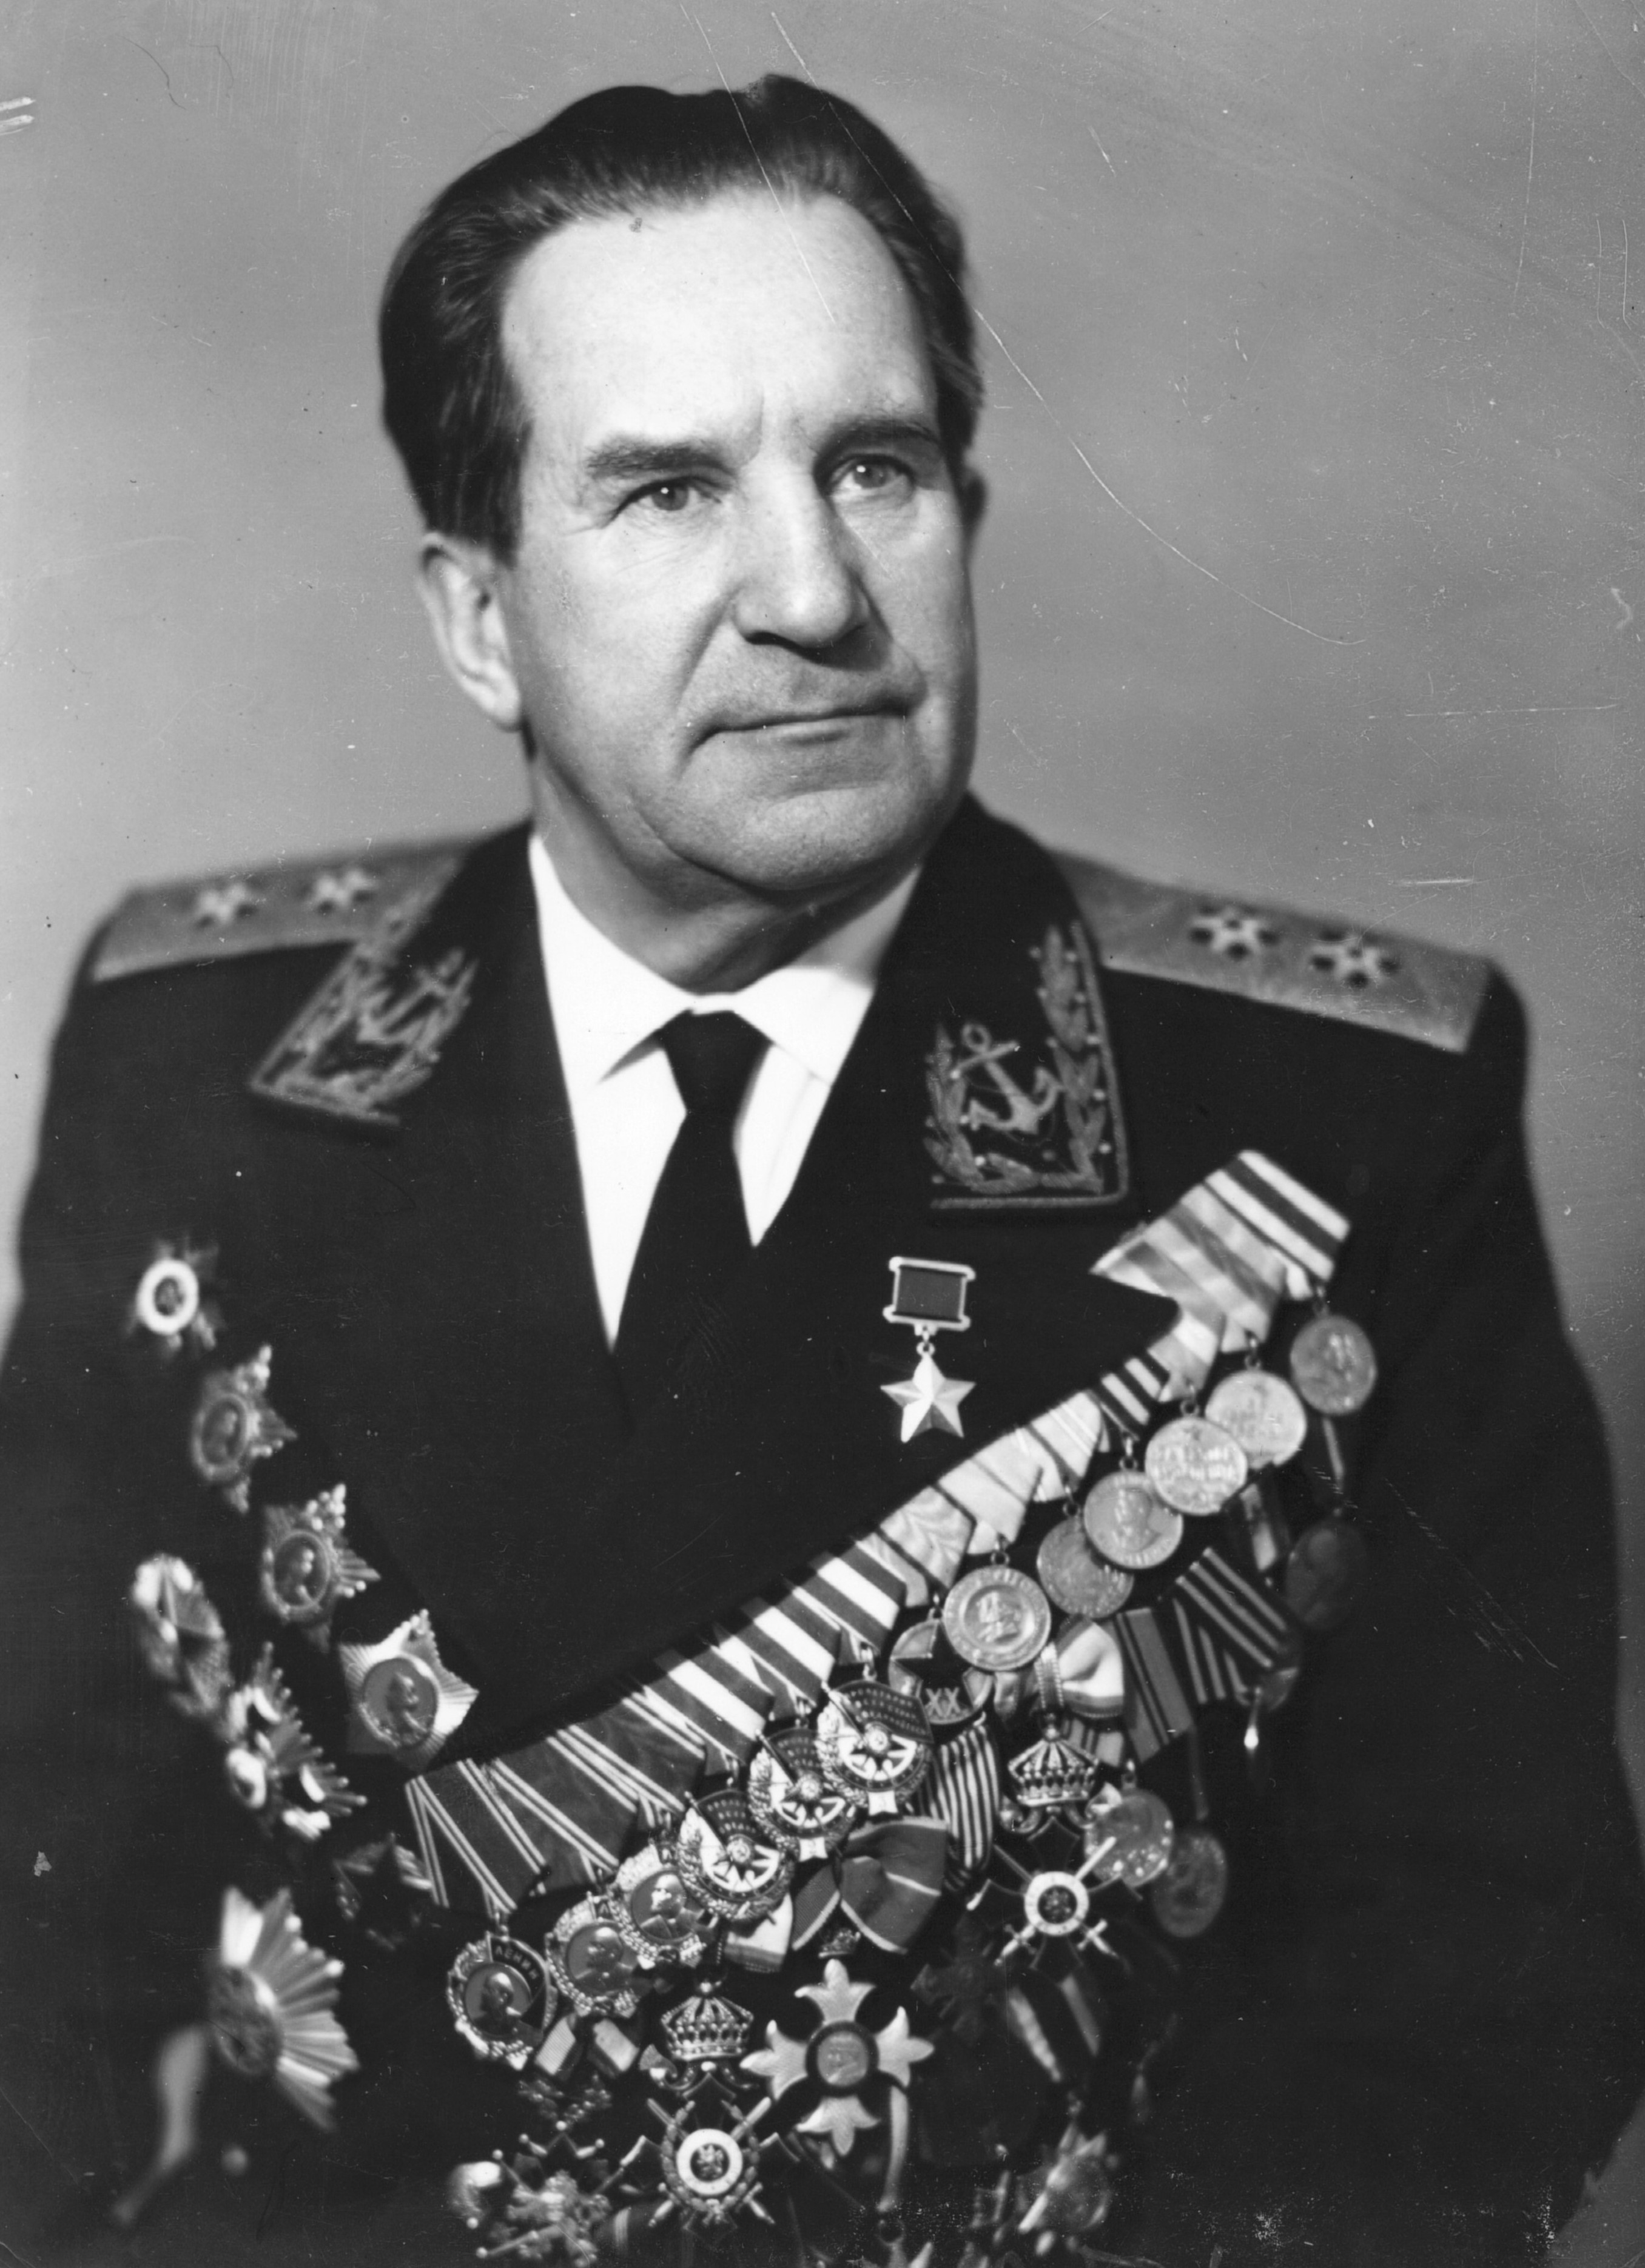 Г.Н. Холостяков, 1975 год